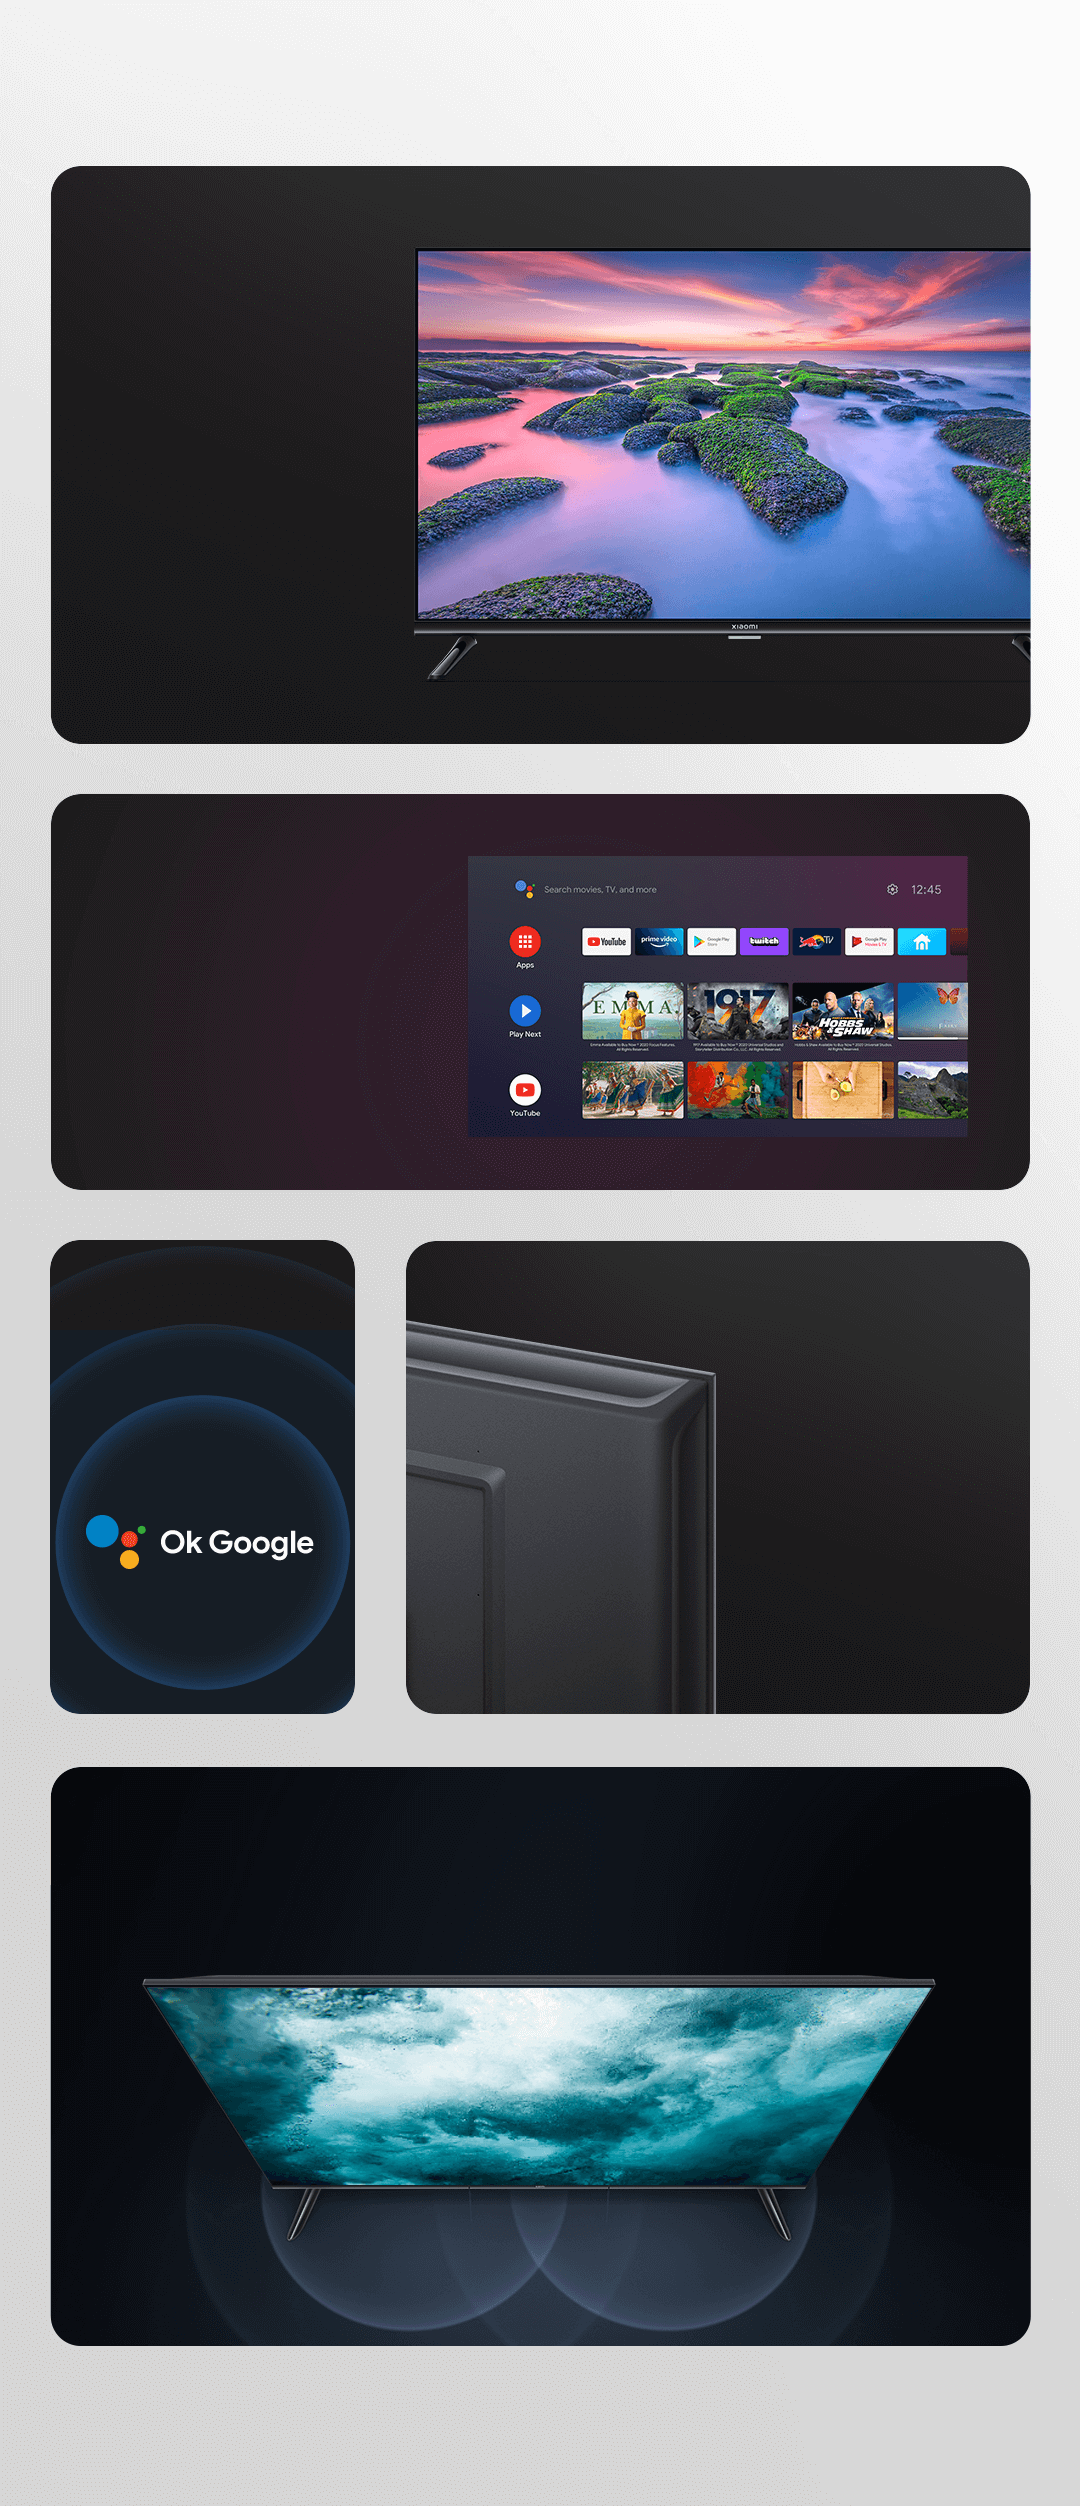 Xiaomi Tv A Pro 32